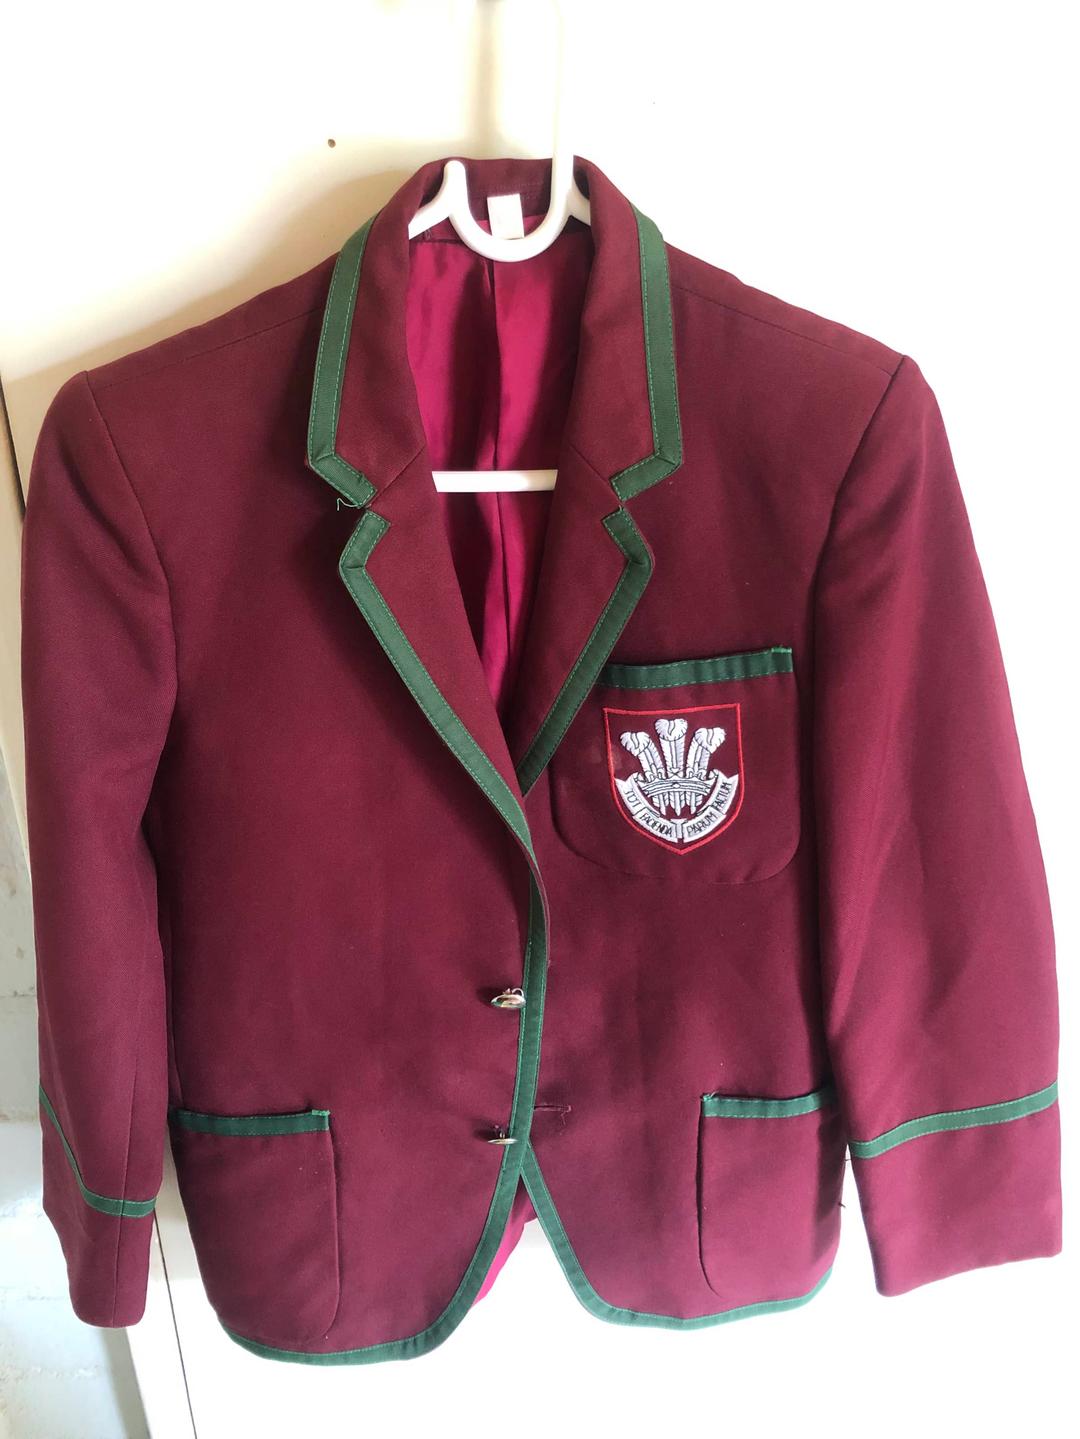 2nd hand Prince Edward High School blazer